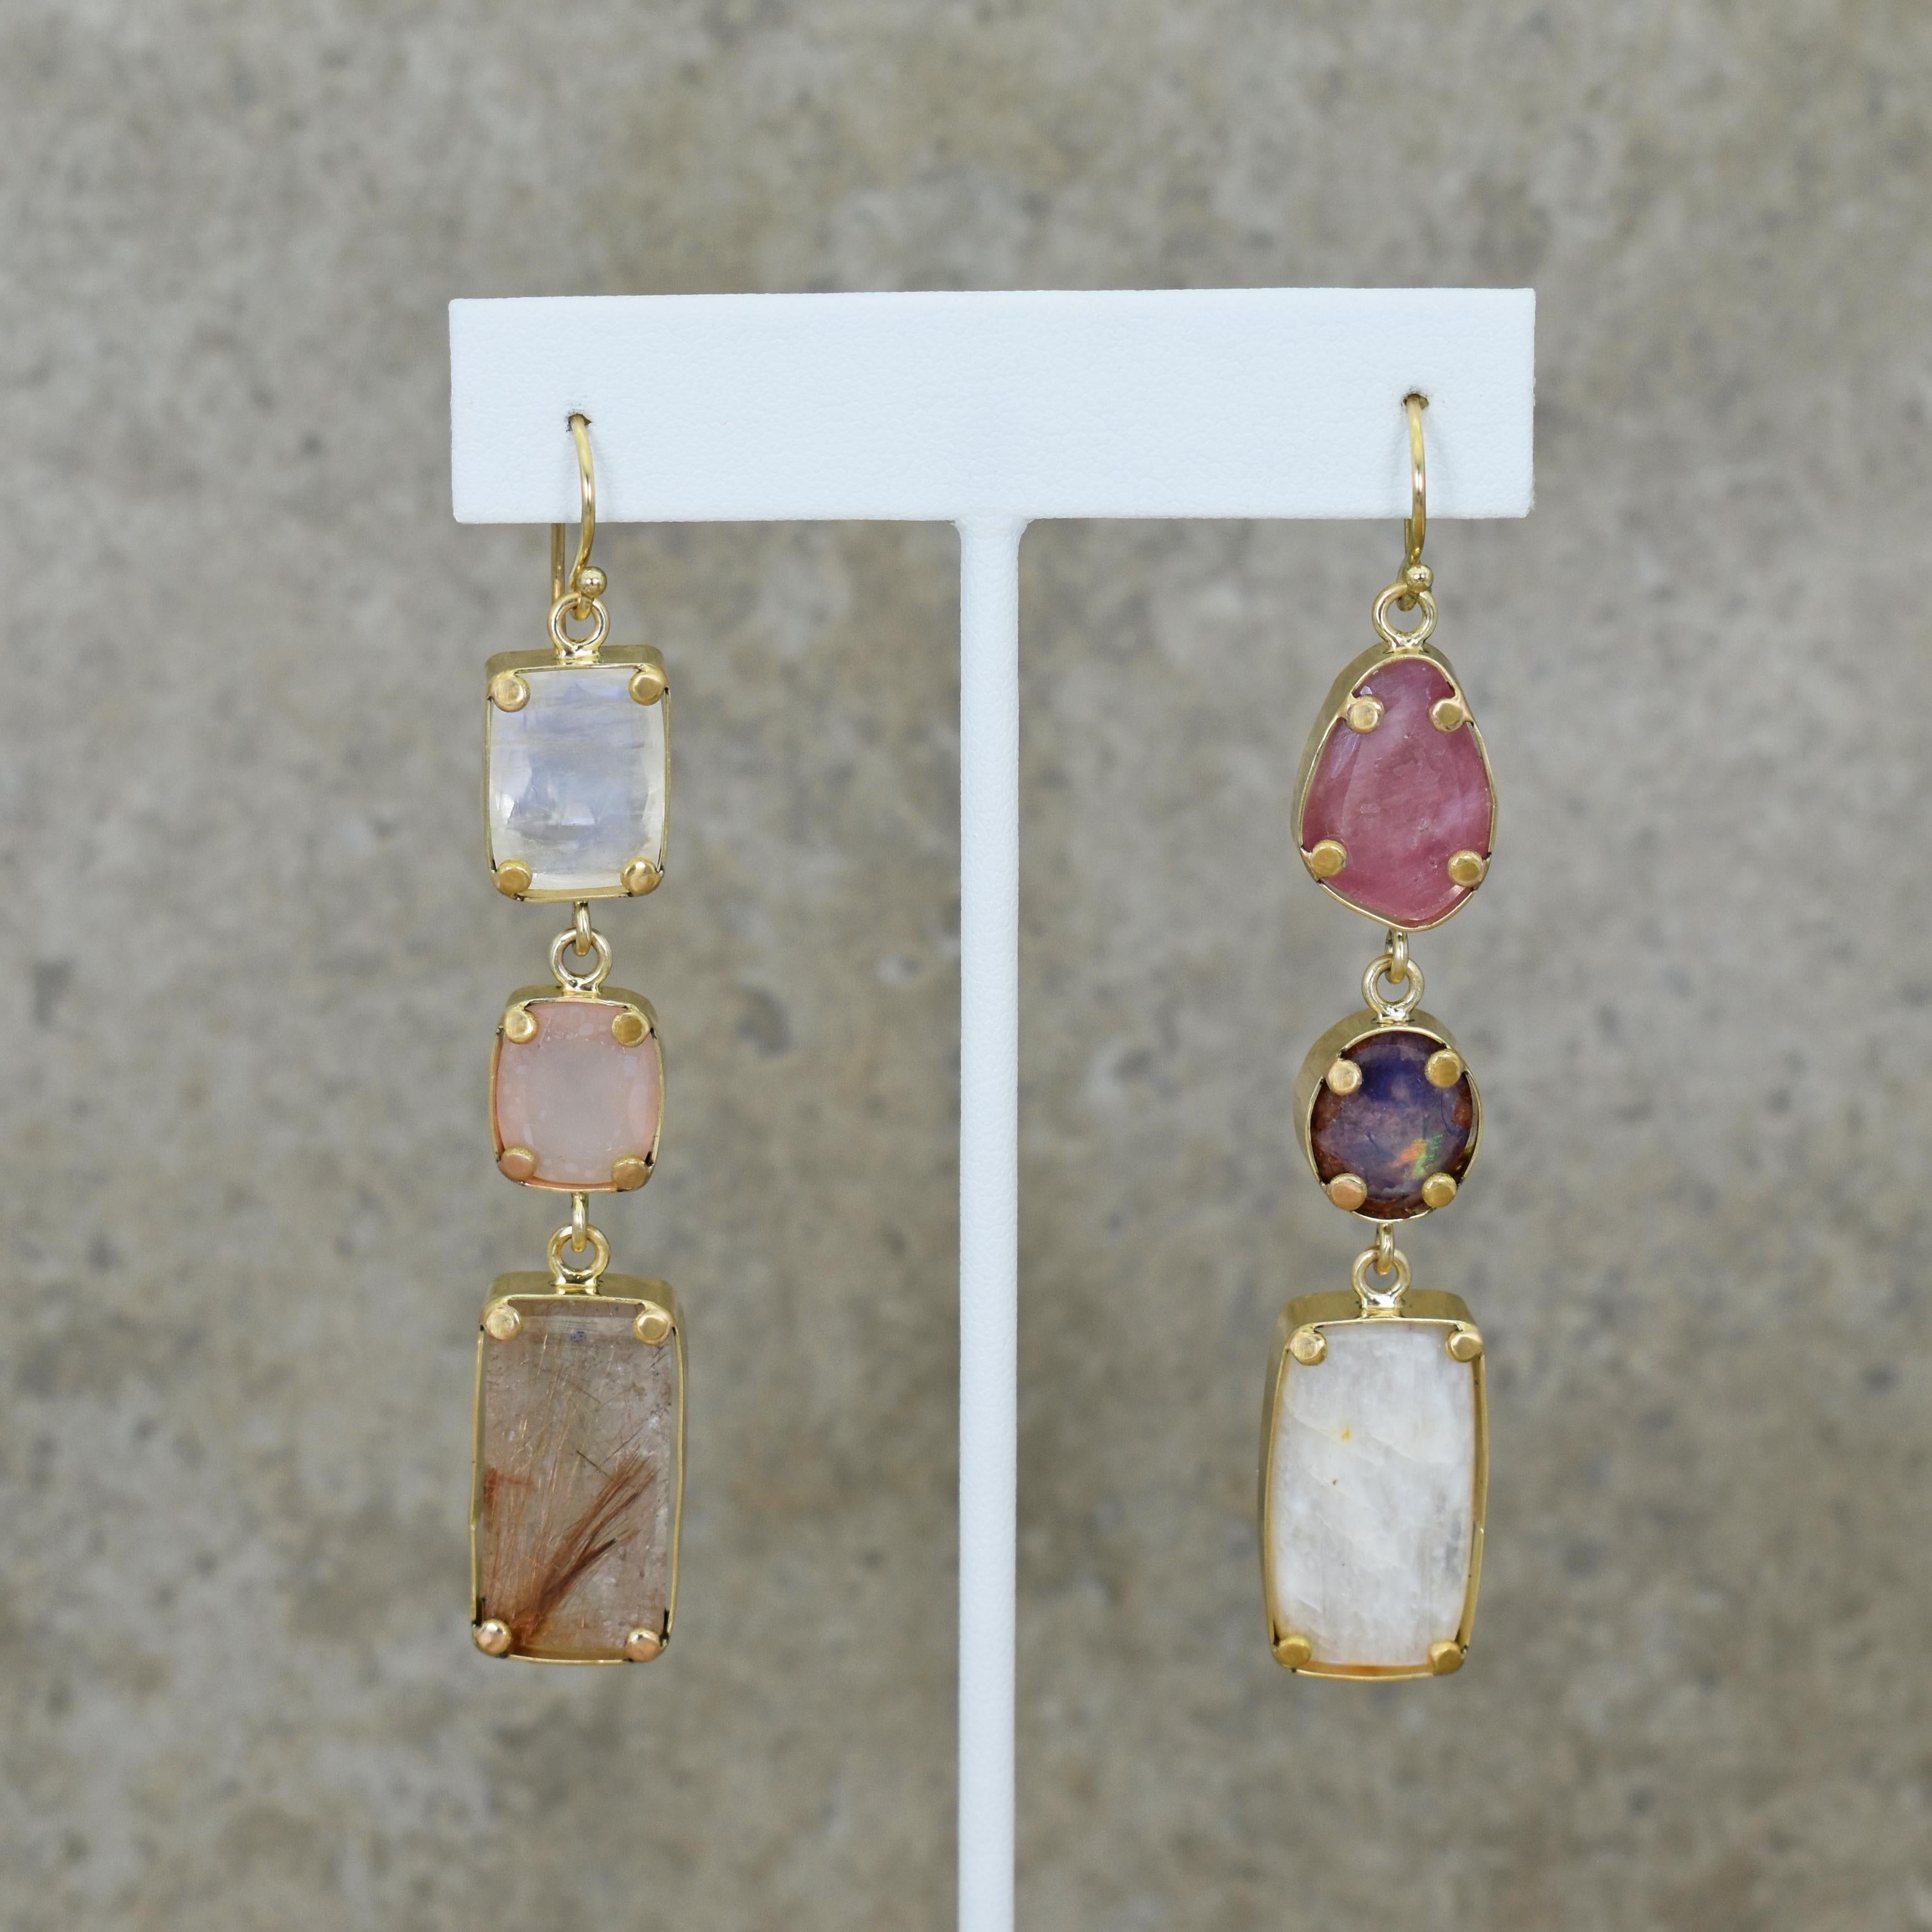 Boucles d'oreilles pendantes asymétriques contemporaines en or jaune 18 carats, composées de pierres de lune facettées, de calcédoine rose, de quartz rutilant, de tourmaline rose, d'opale de feu mexicaine et d'un cabochon de pierre de lune russe.